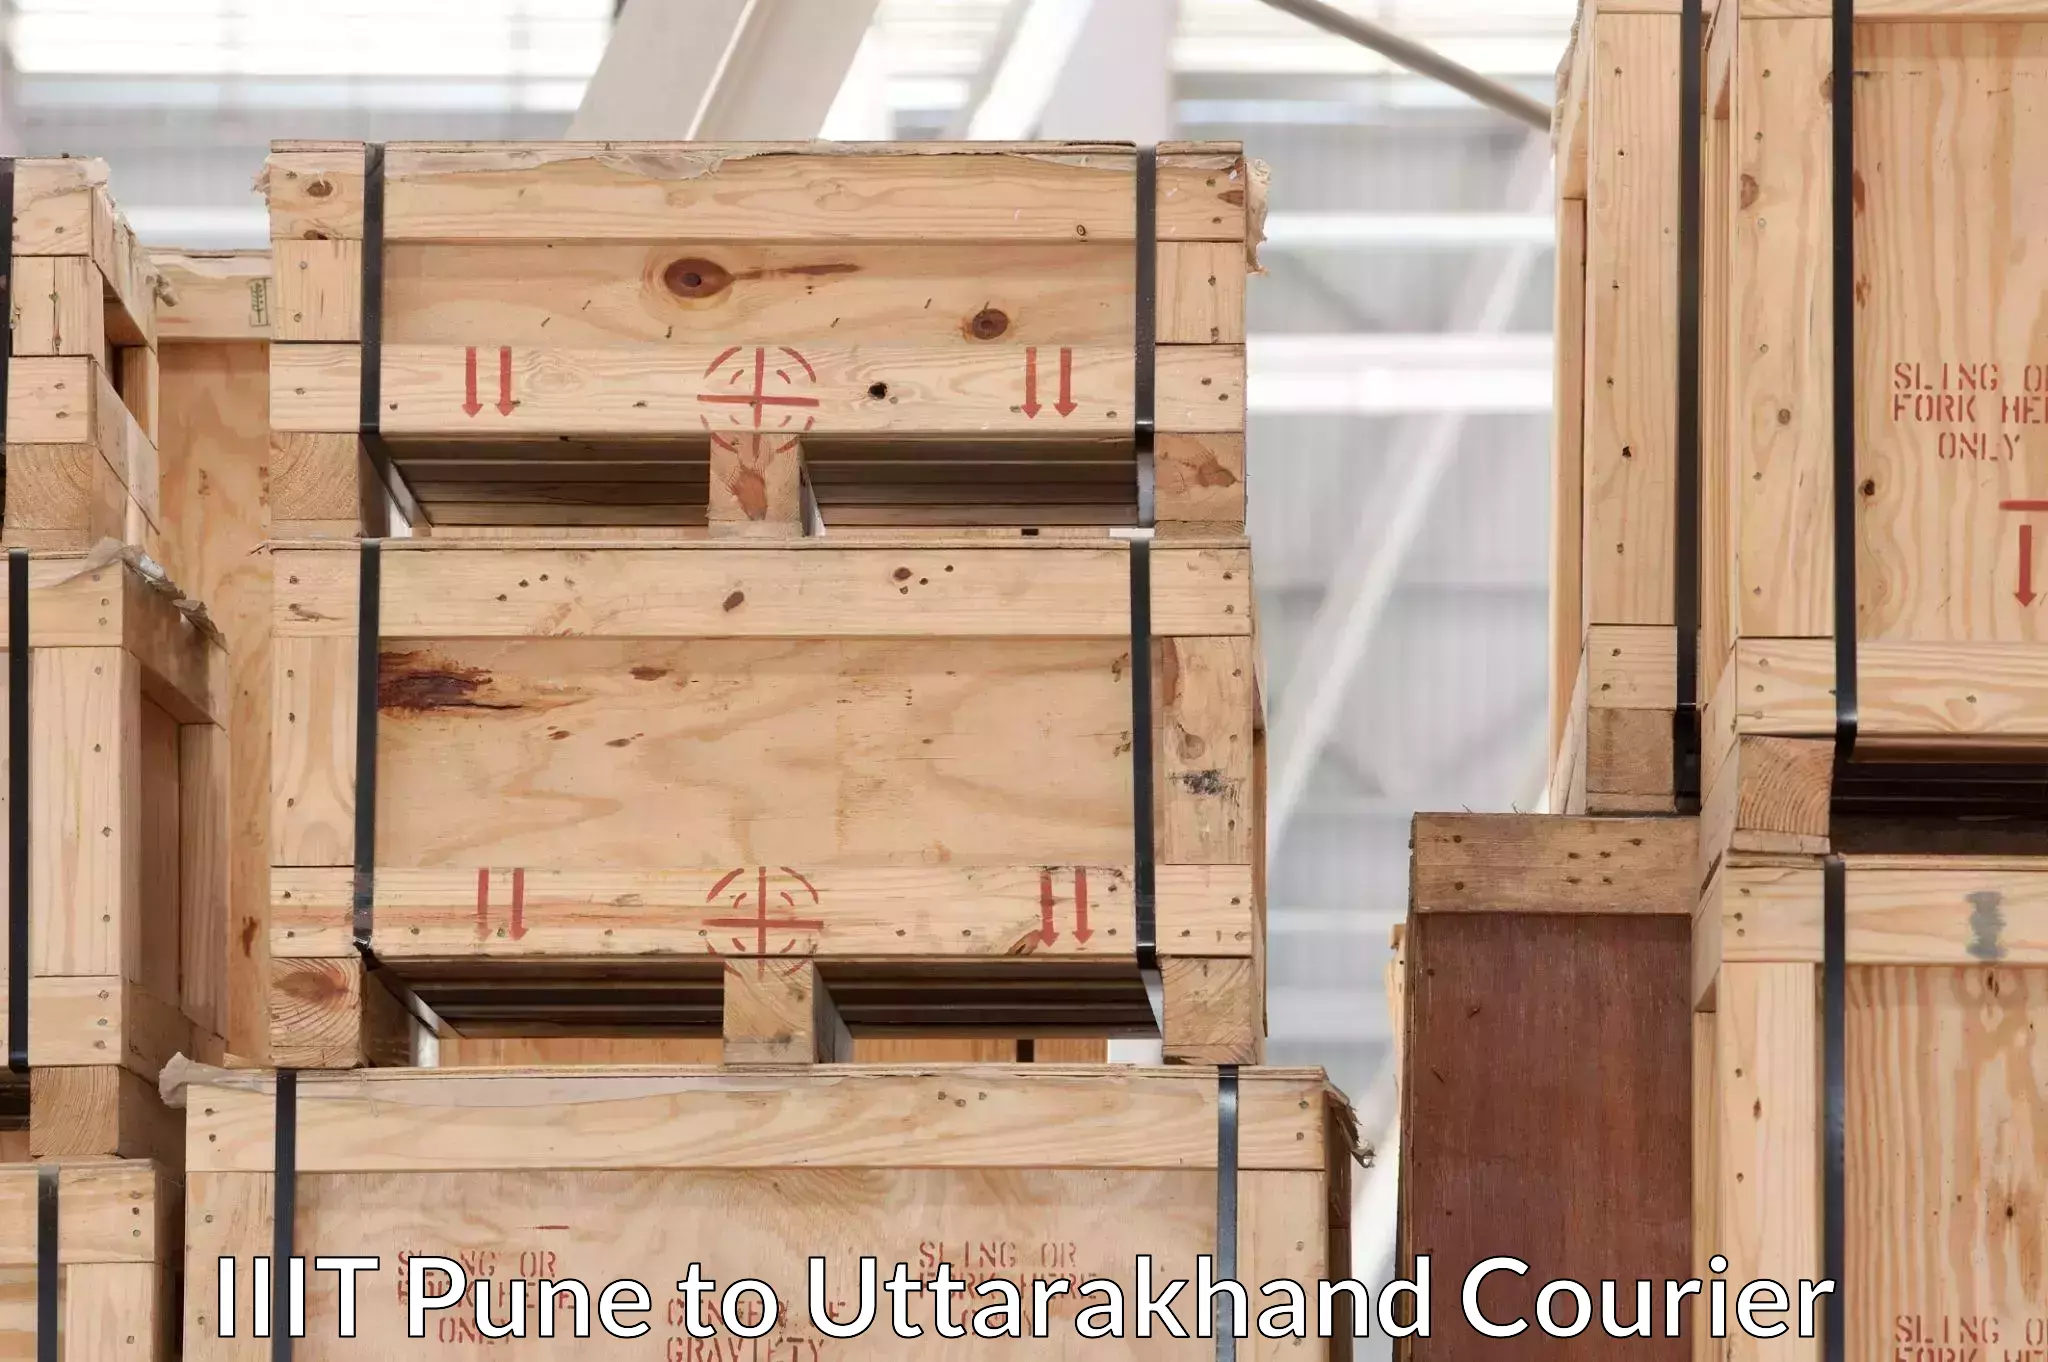 Furniture moving service in IIIT Pune to Sitarganj